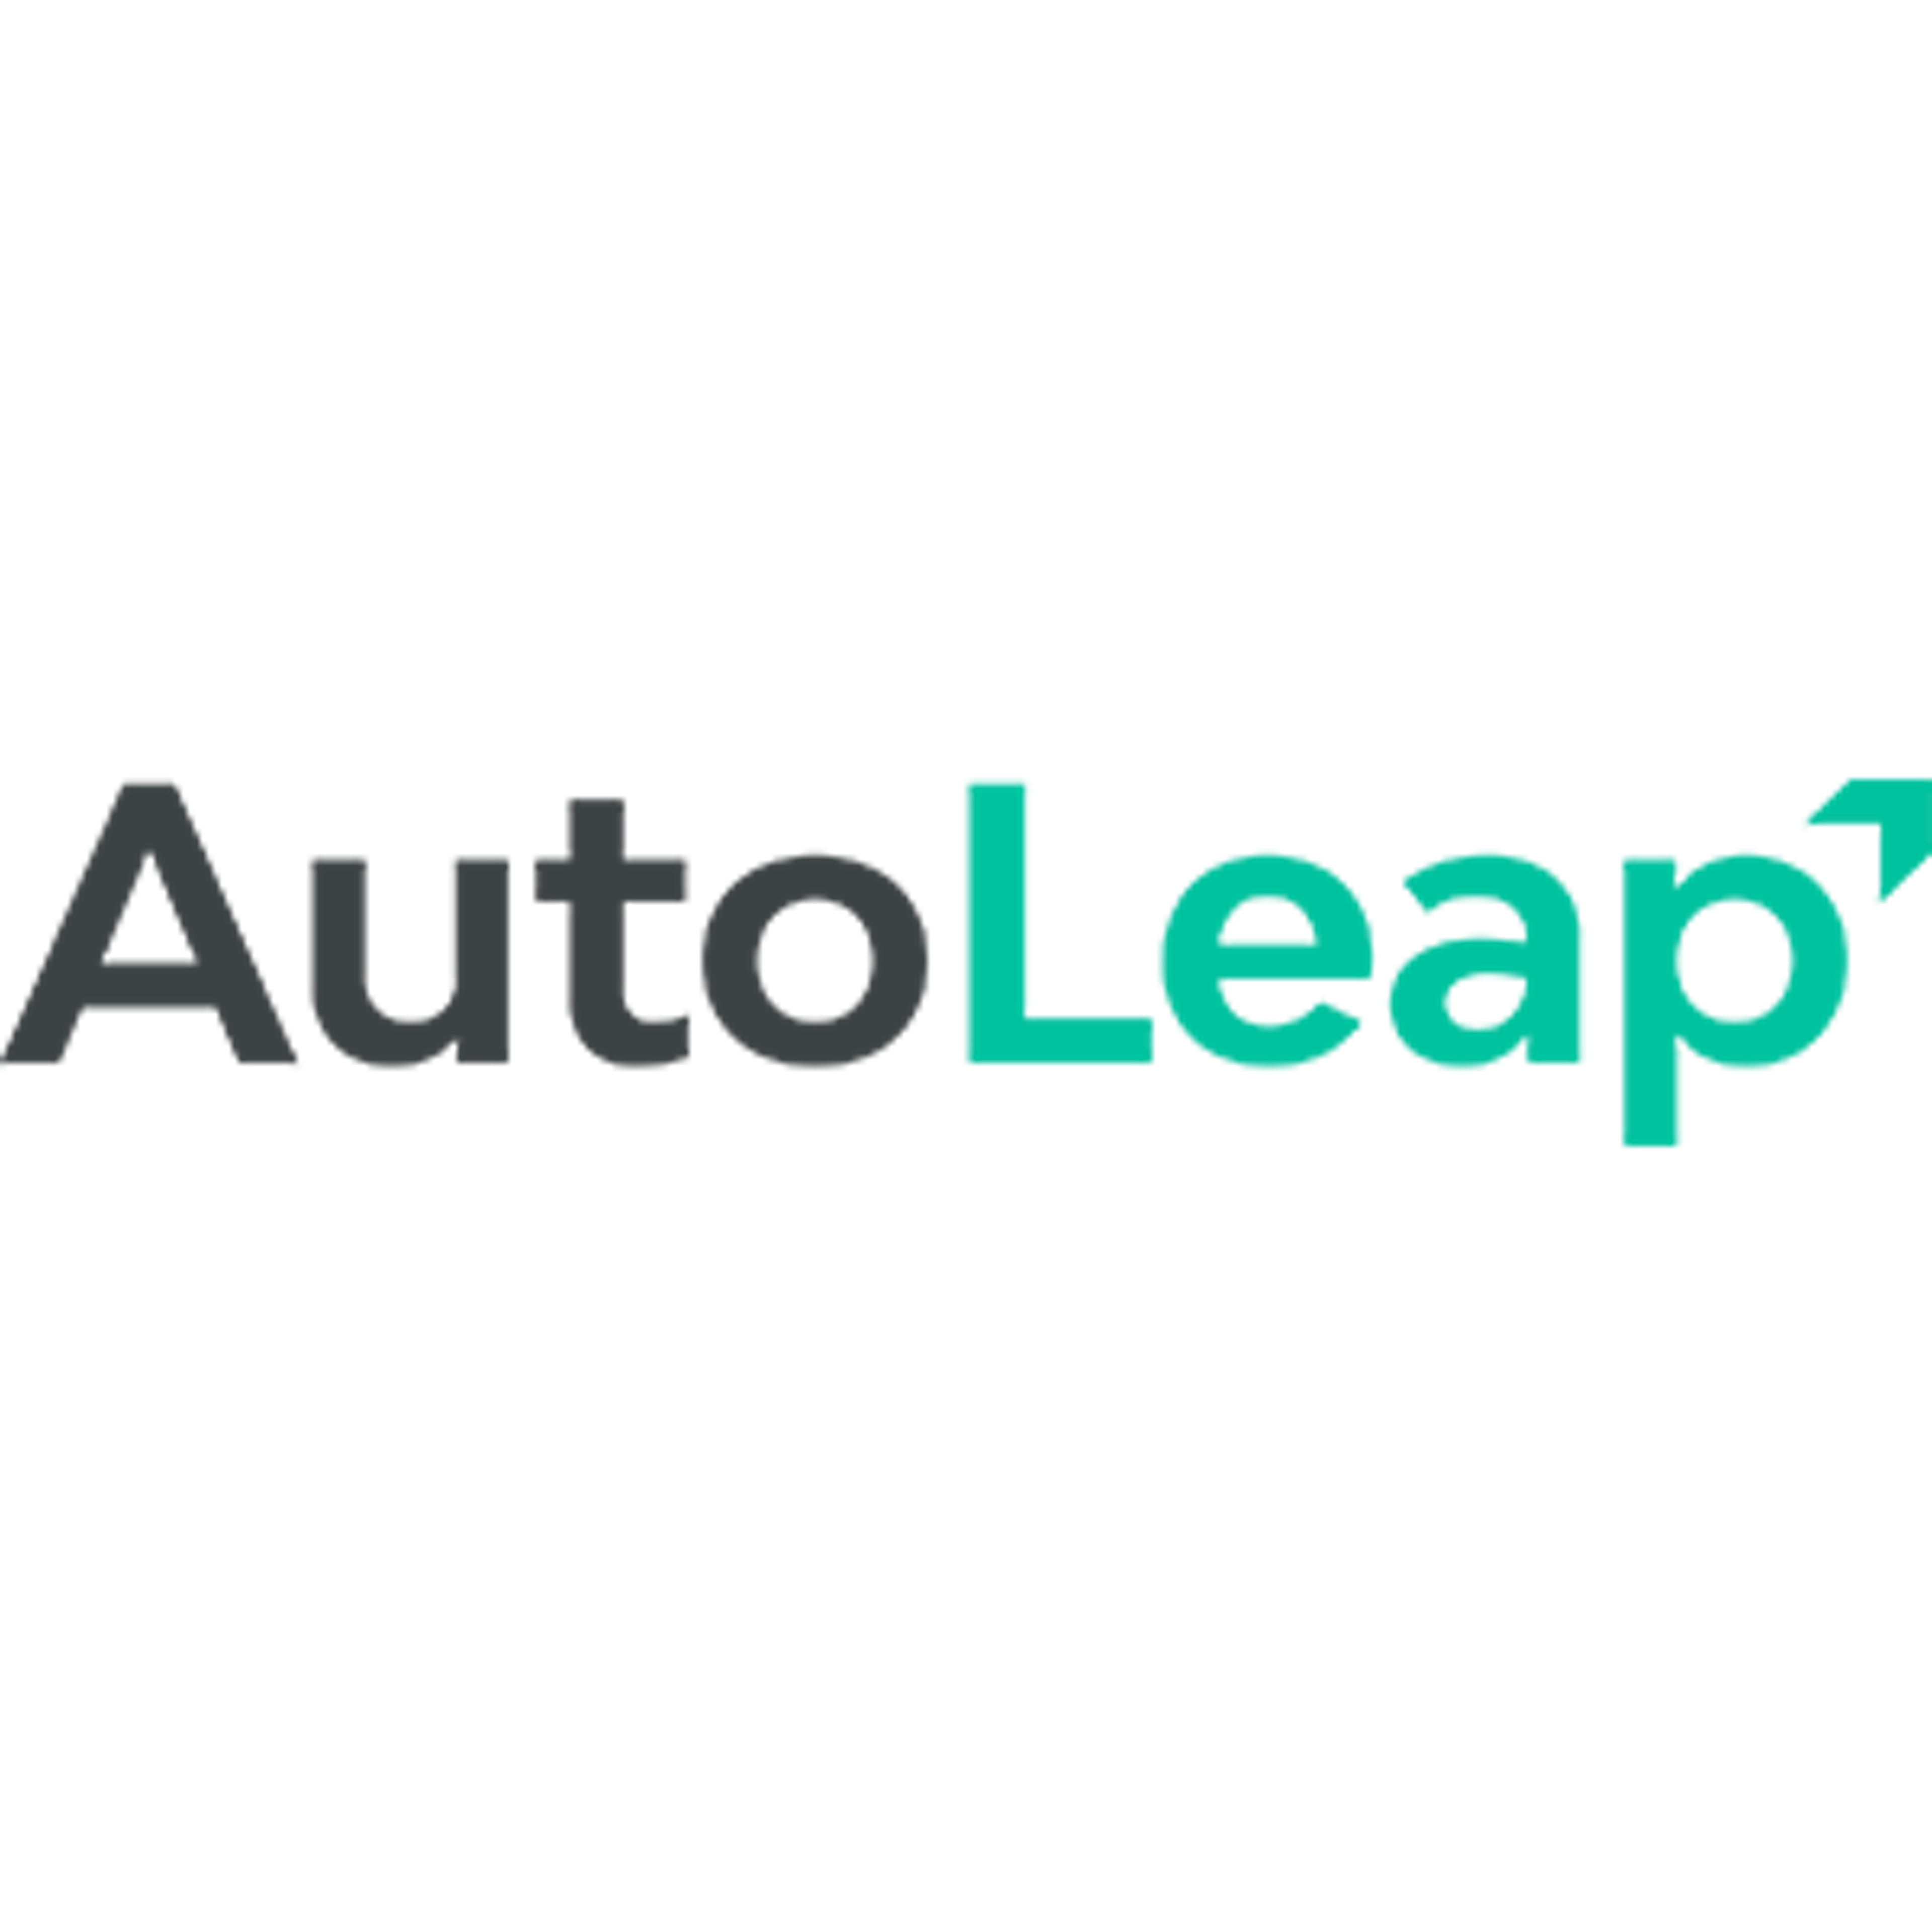 AutoLeap Logo